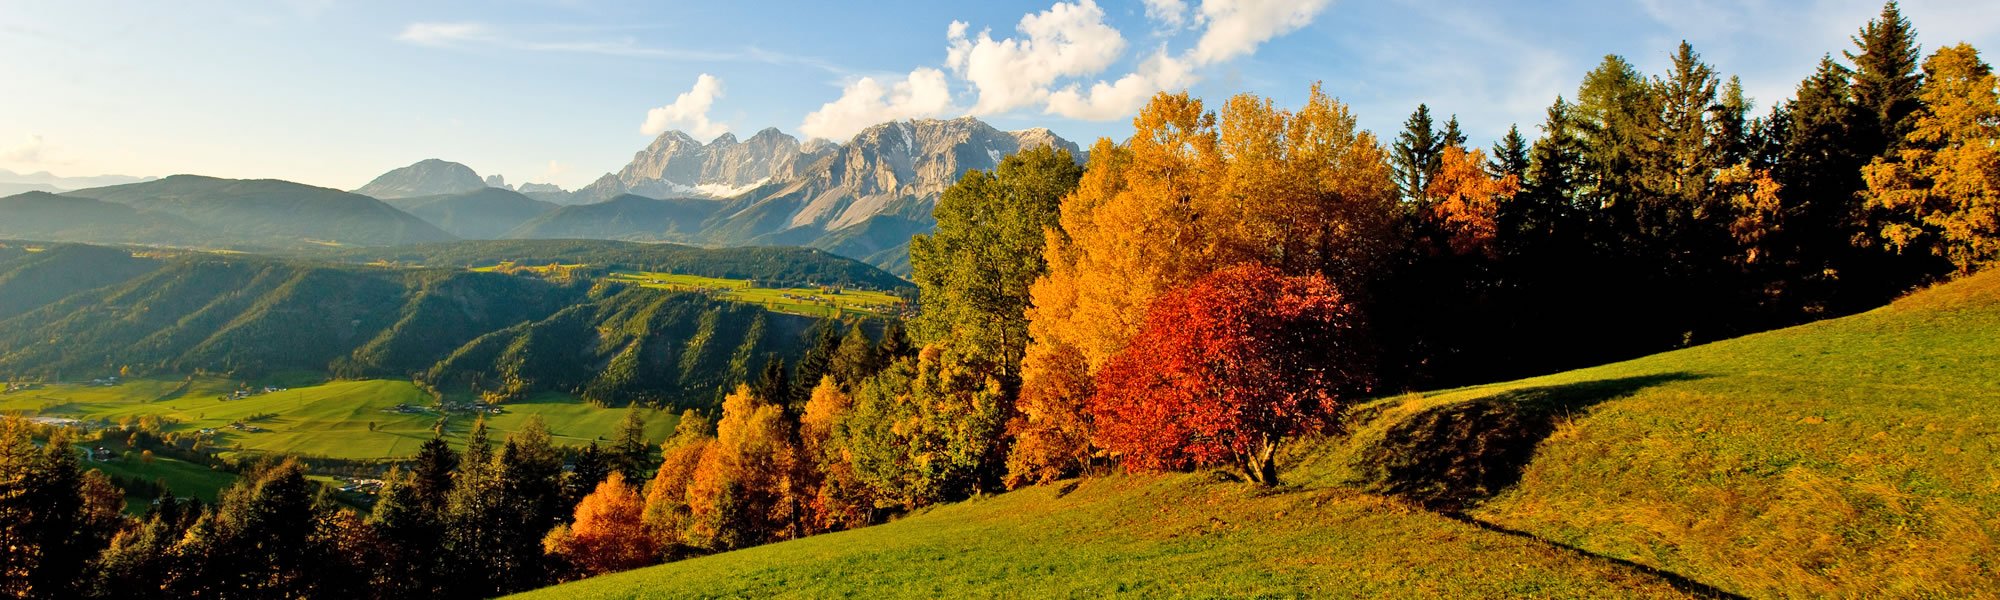 Traumhafte Herbstlandschaft in Ramsau am Dachstein